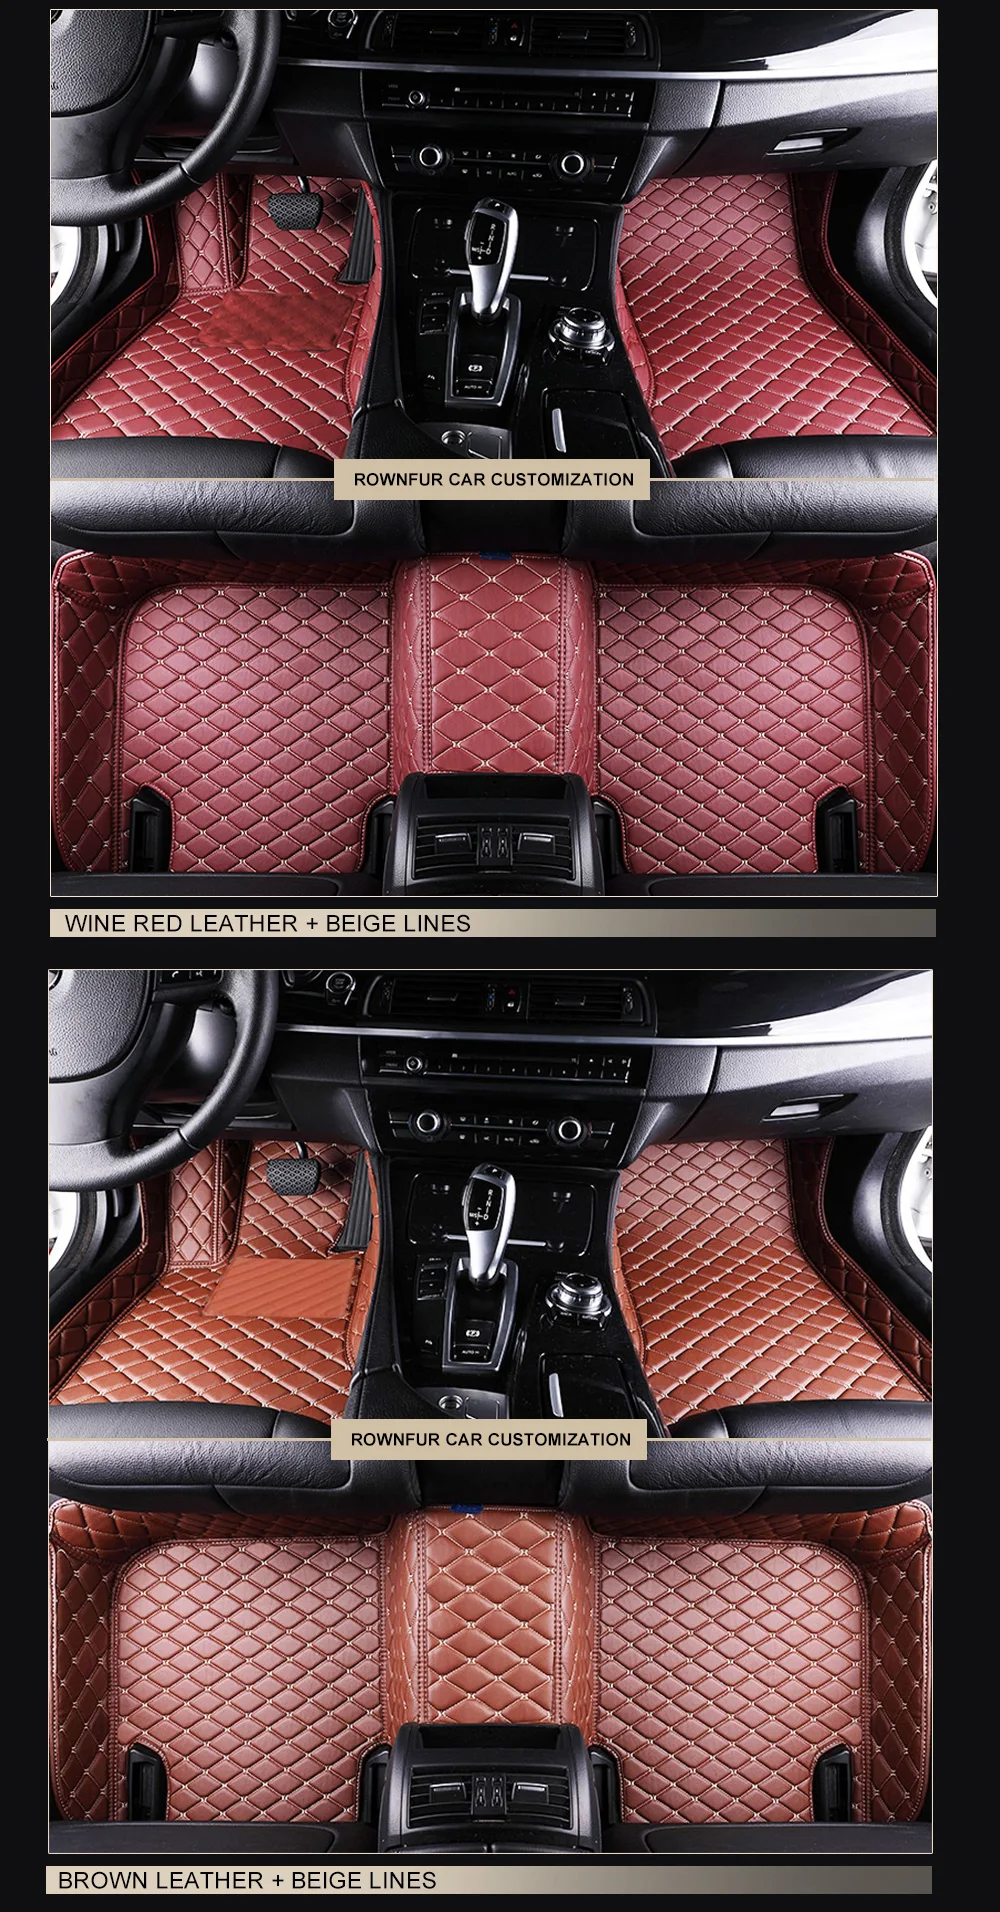 Коврики в машину Коврики для авто автотовары аксессуары для авто 3D коврик из эко-кожи в салон автомобиля для Mitsubishi Lancer 2007- X полный комплект на весь салон автомобиля, 6 различных цветов на ваш вкус